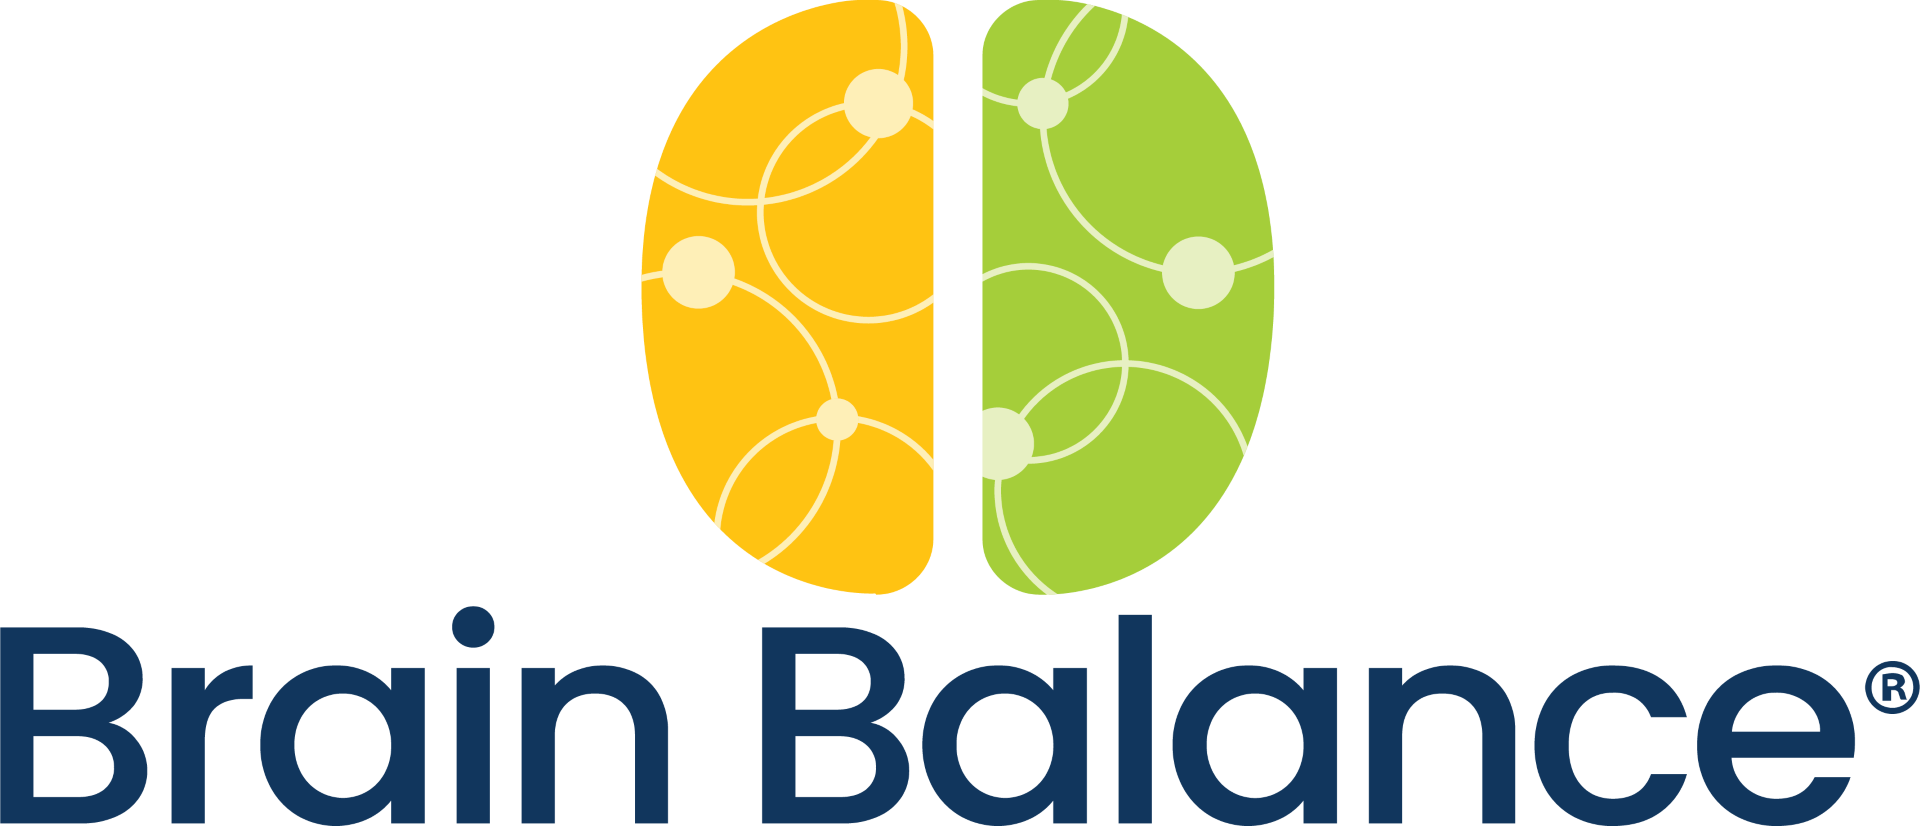 Brain Balance Logo